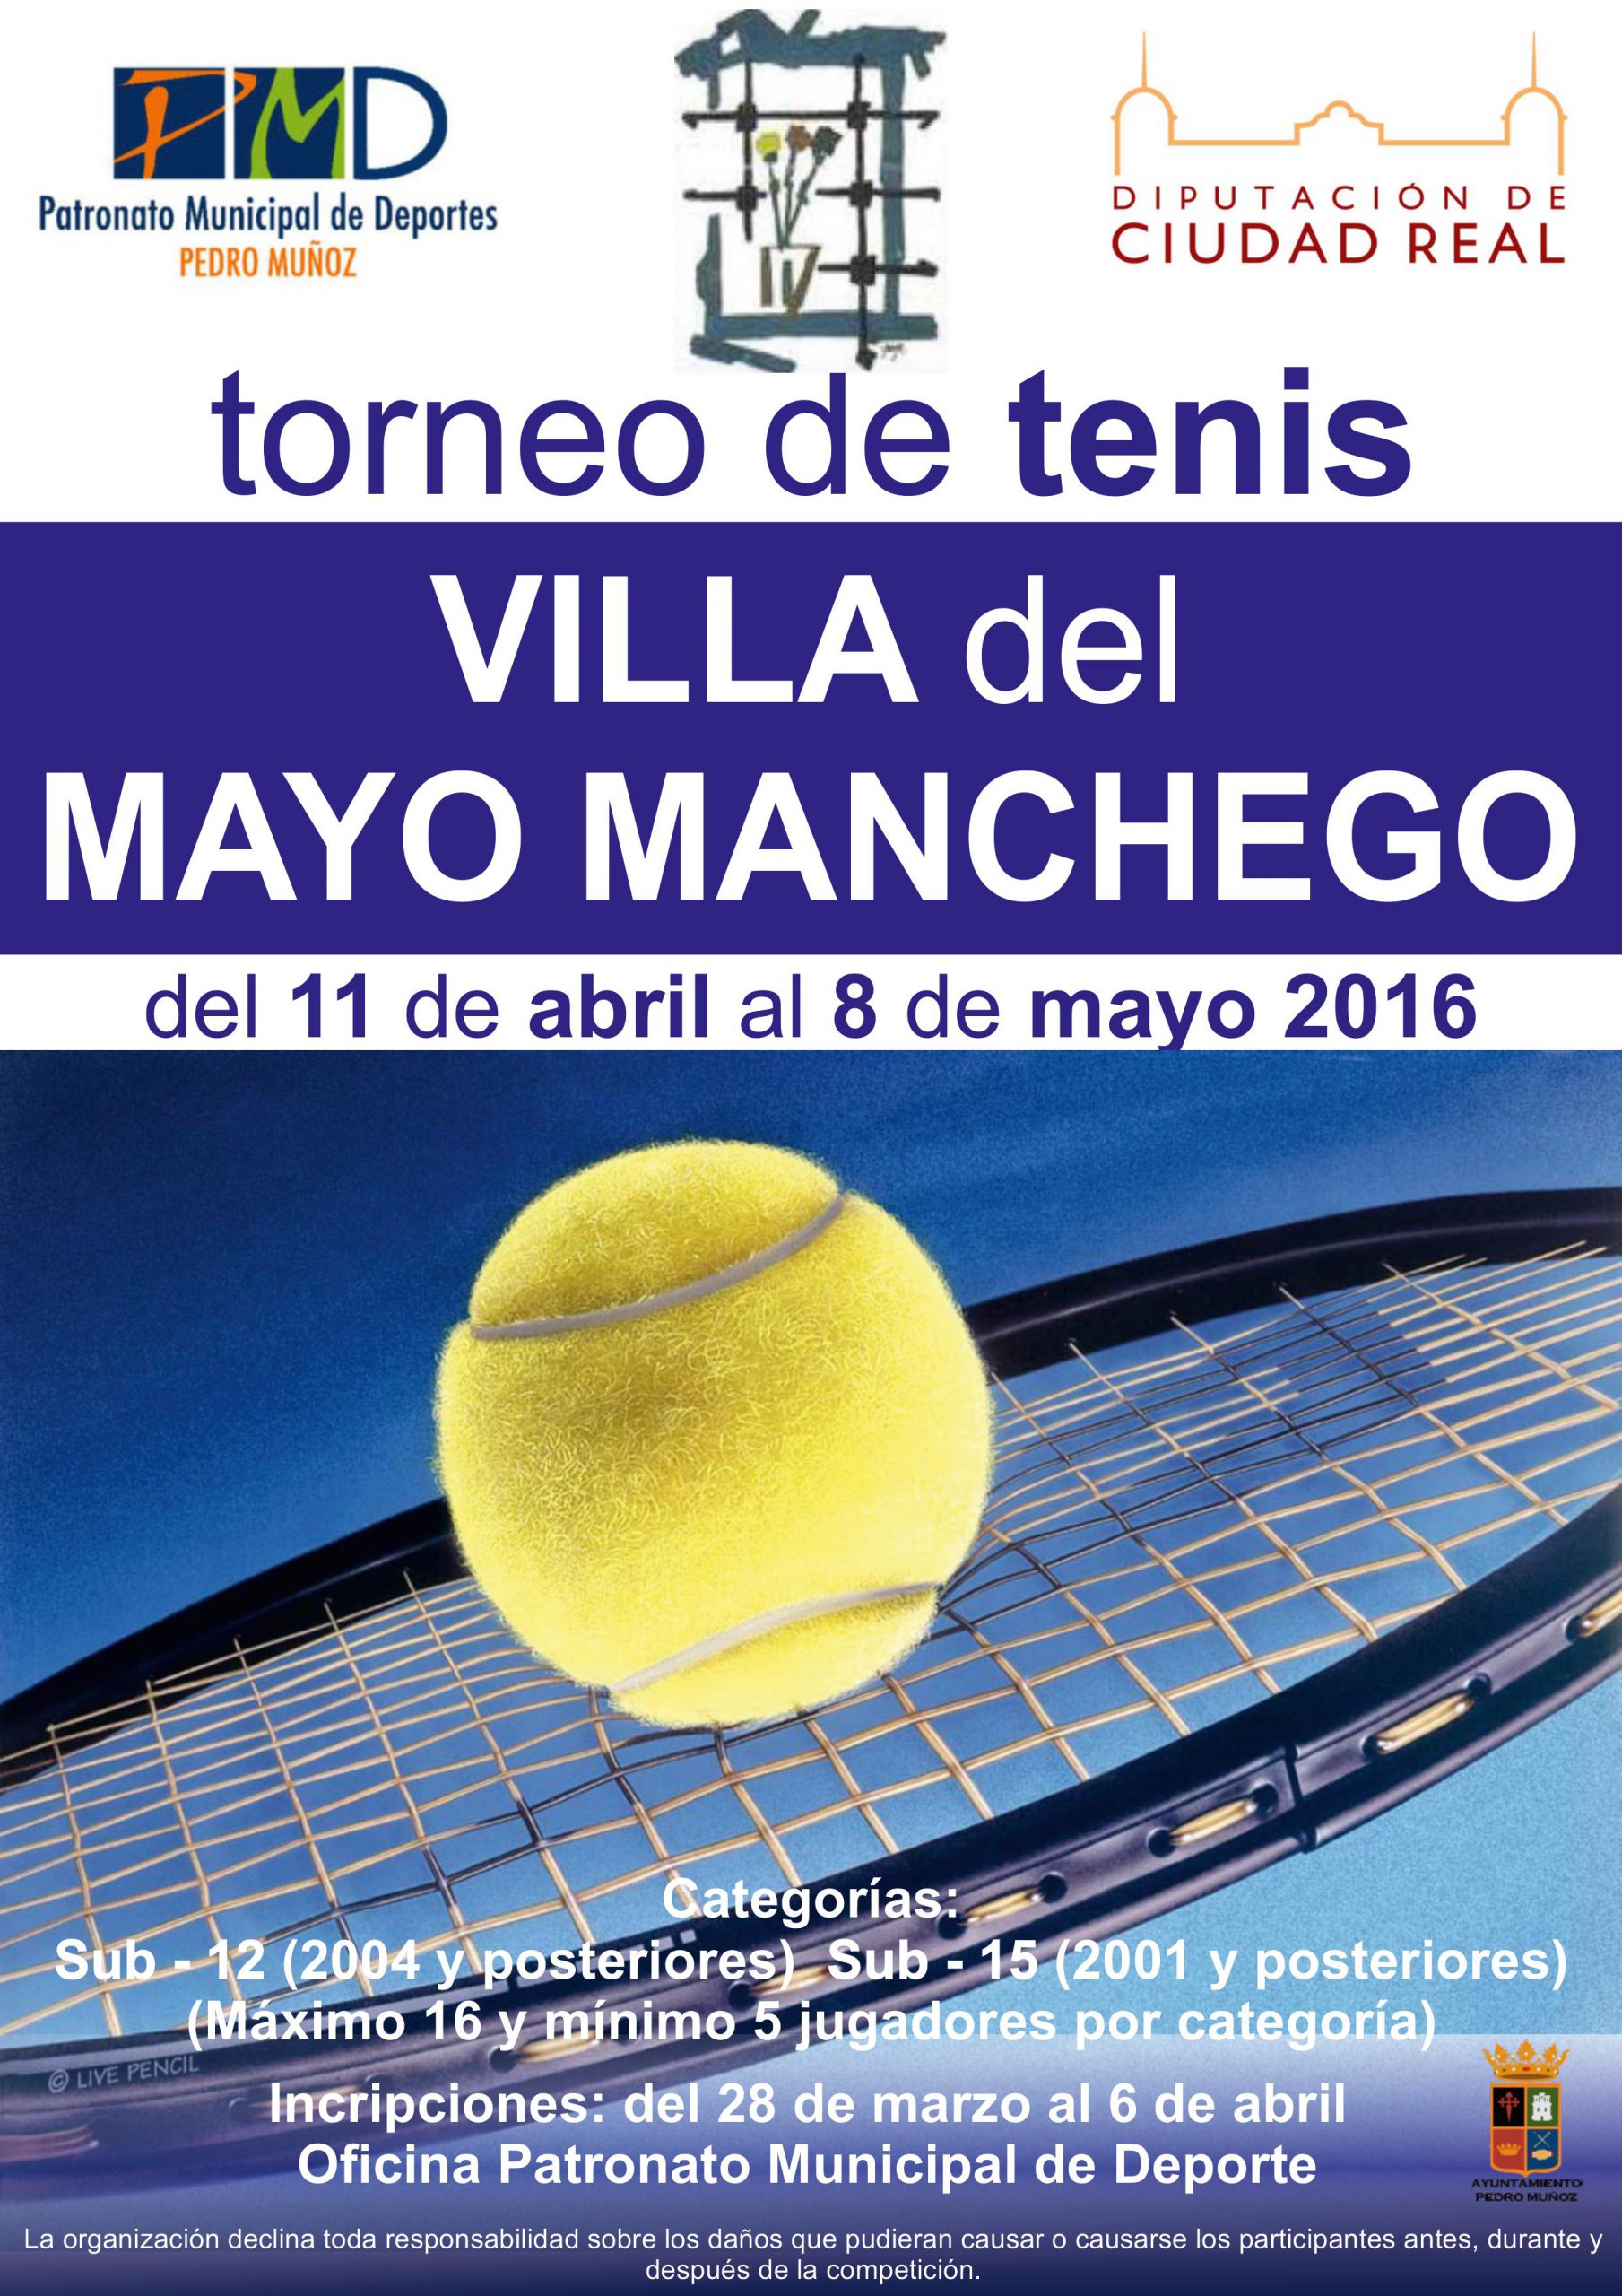 Torneo de Tenis “Villa del Mayo Manchego”